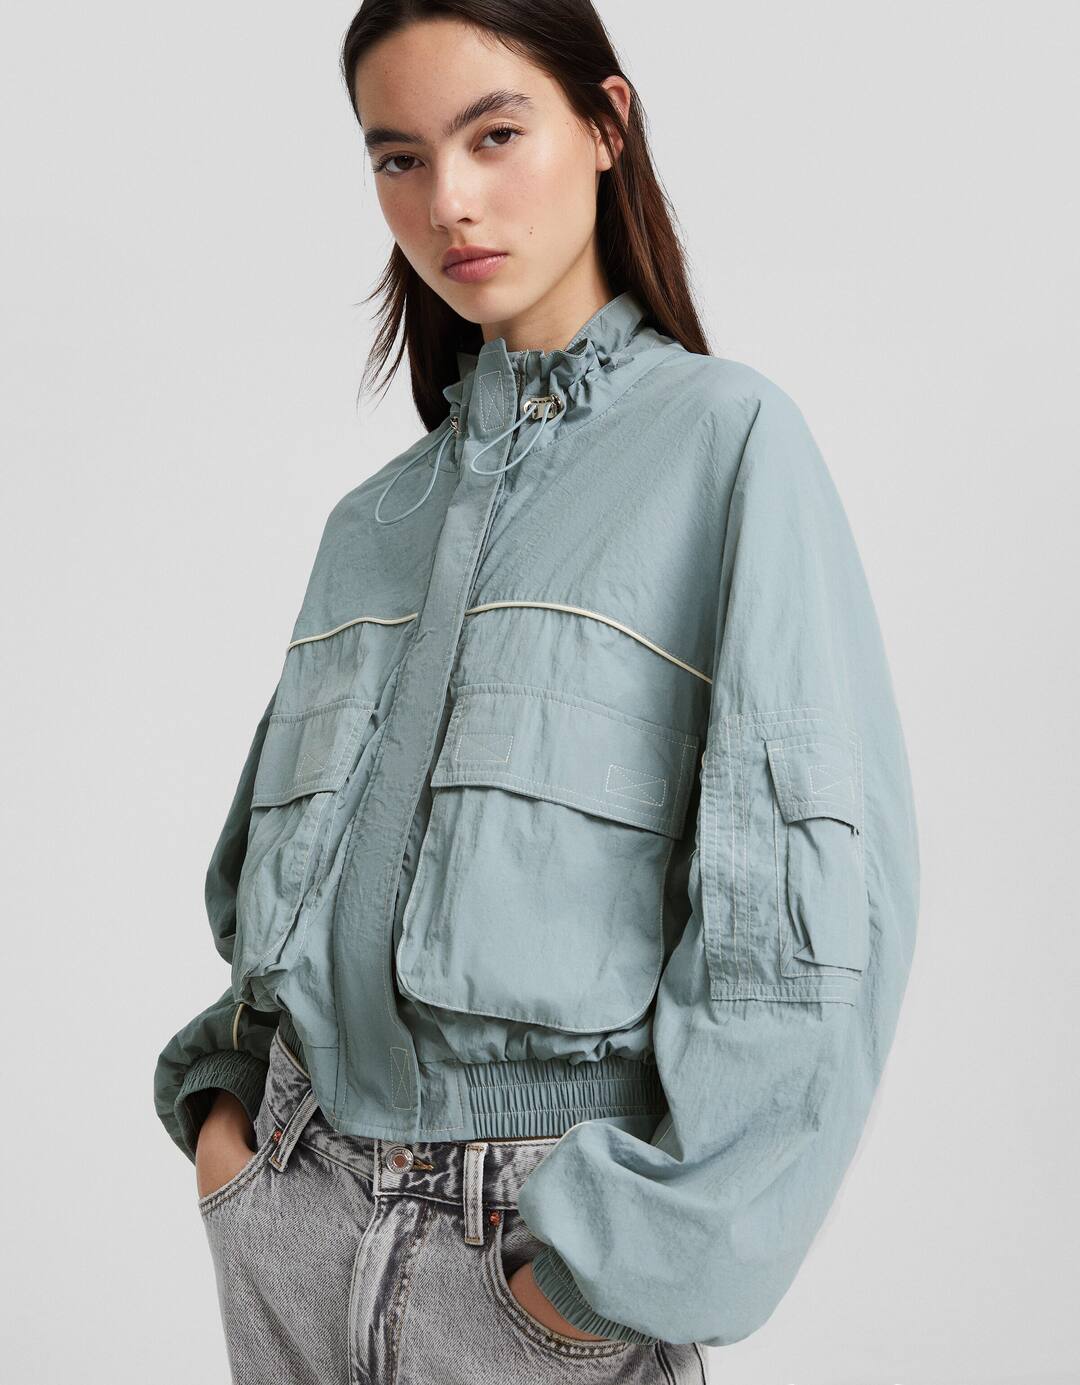 Nylon jacket with 3D pockets